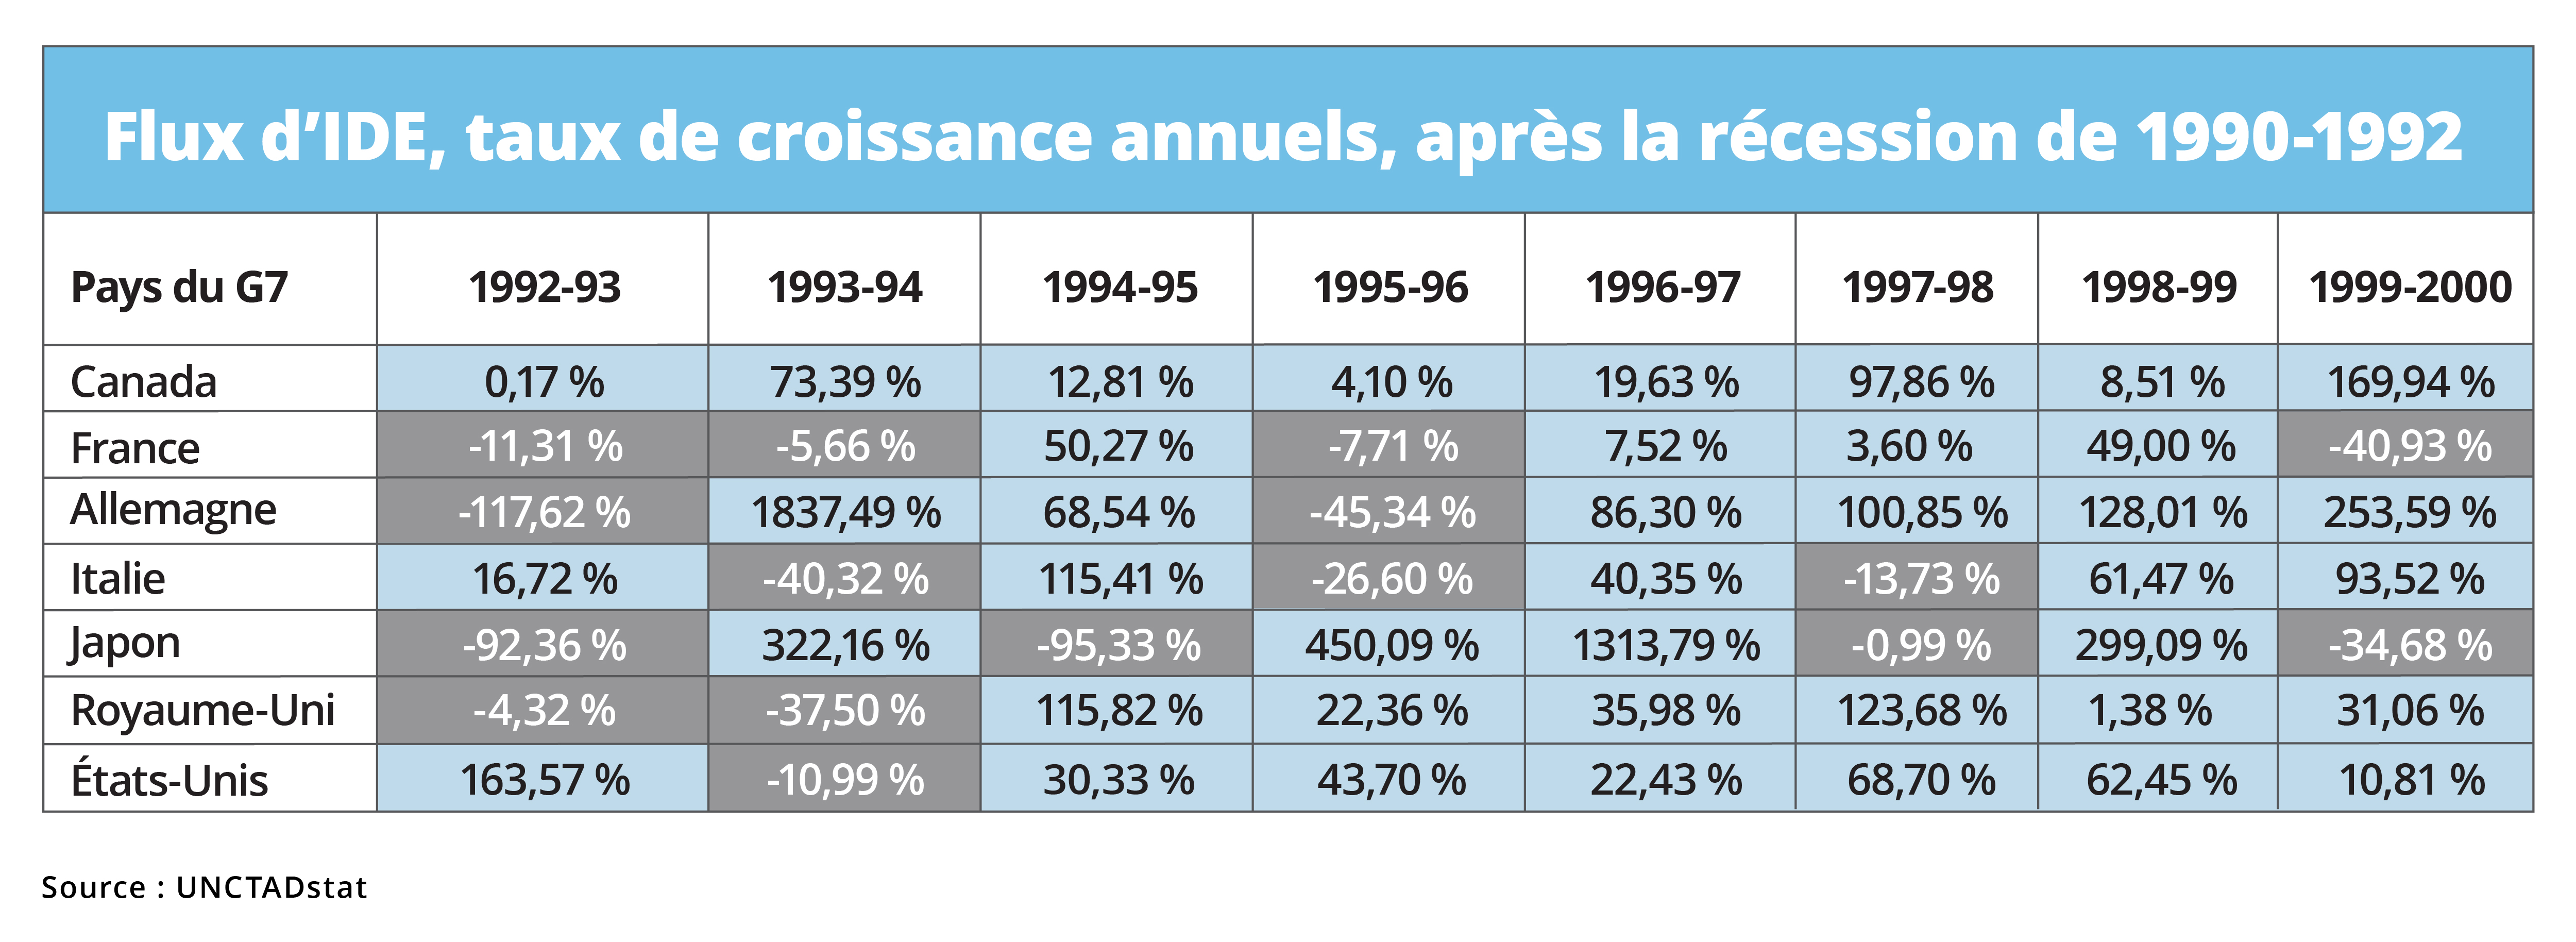 Flux d'IDE, taux de croissance annuels, après la récession de 1990-1992